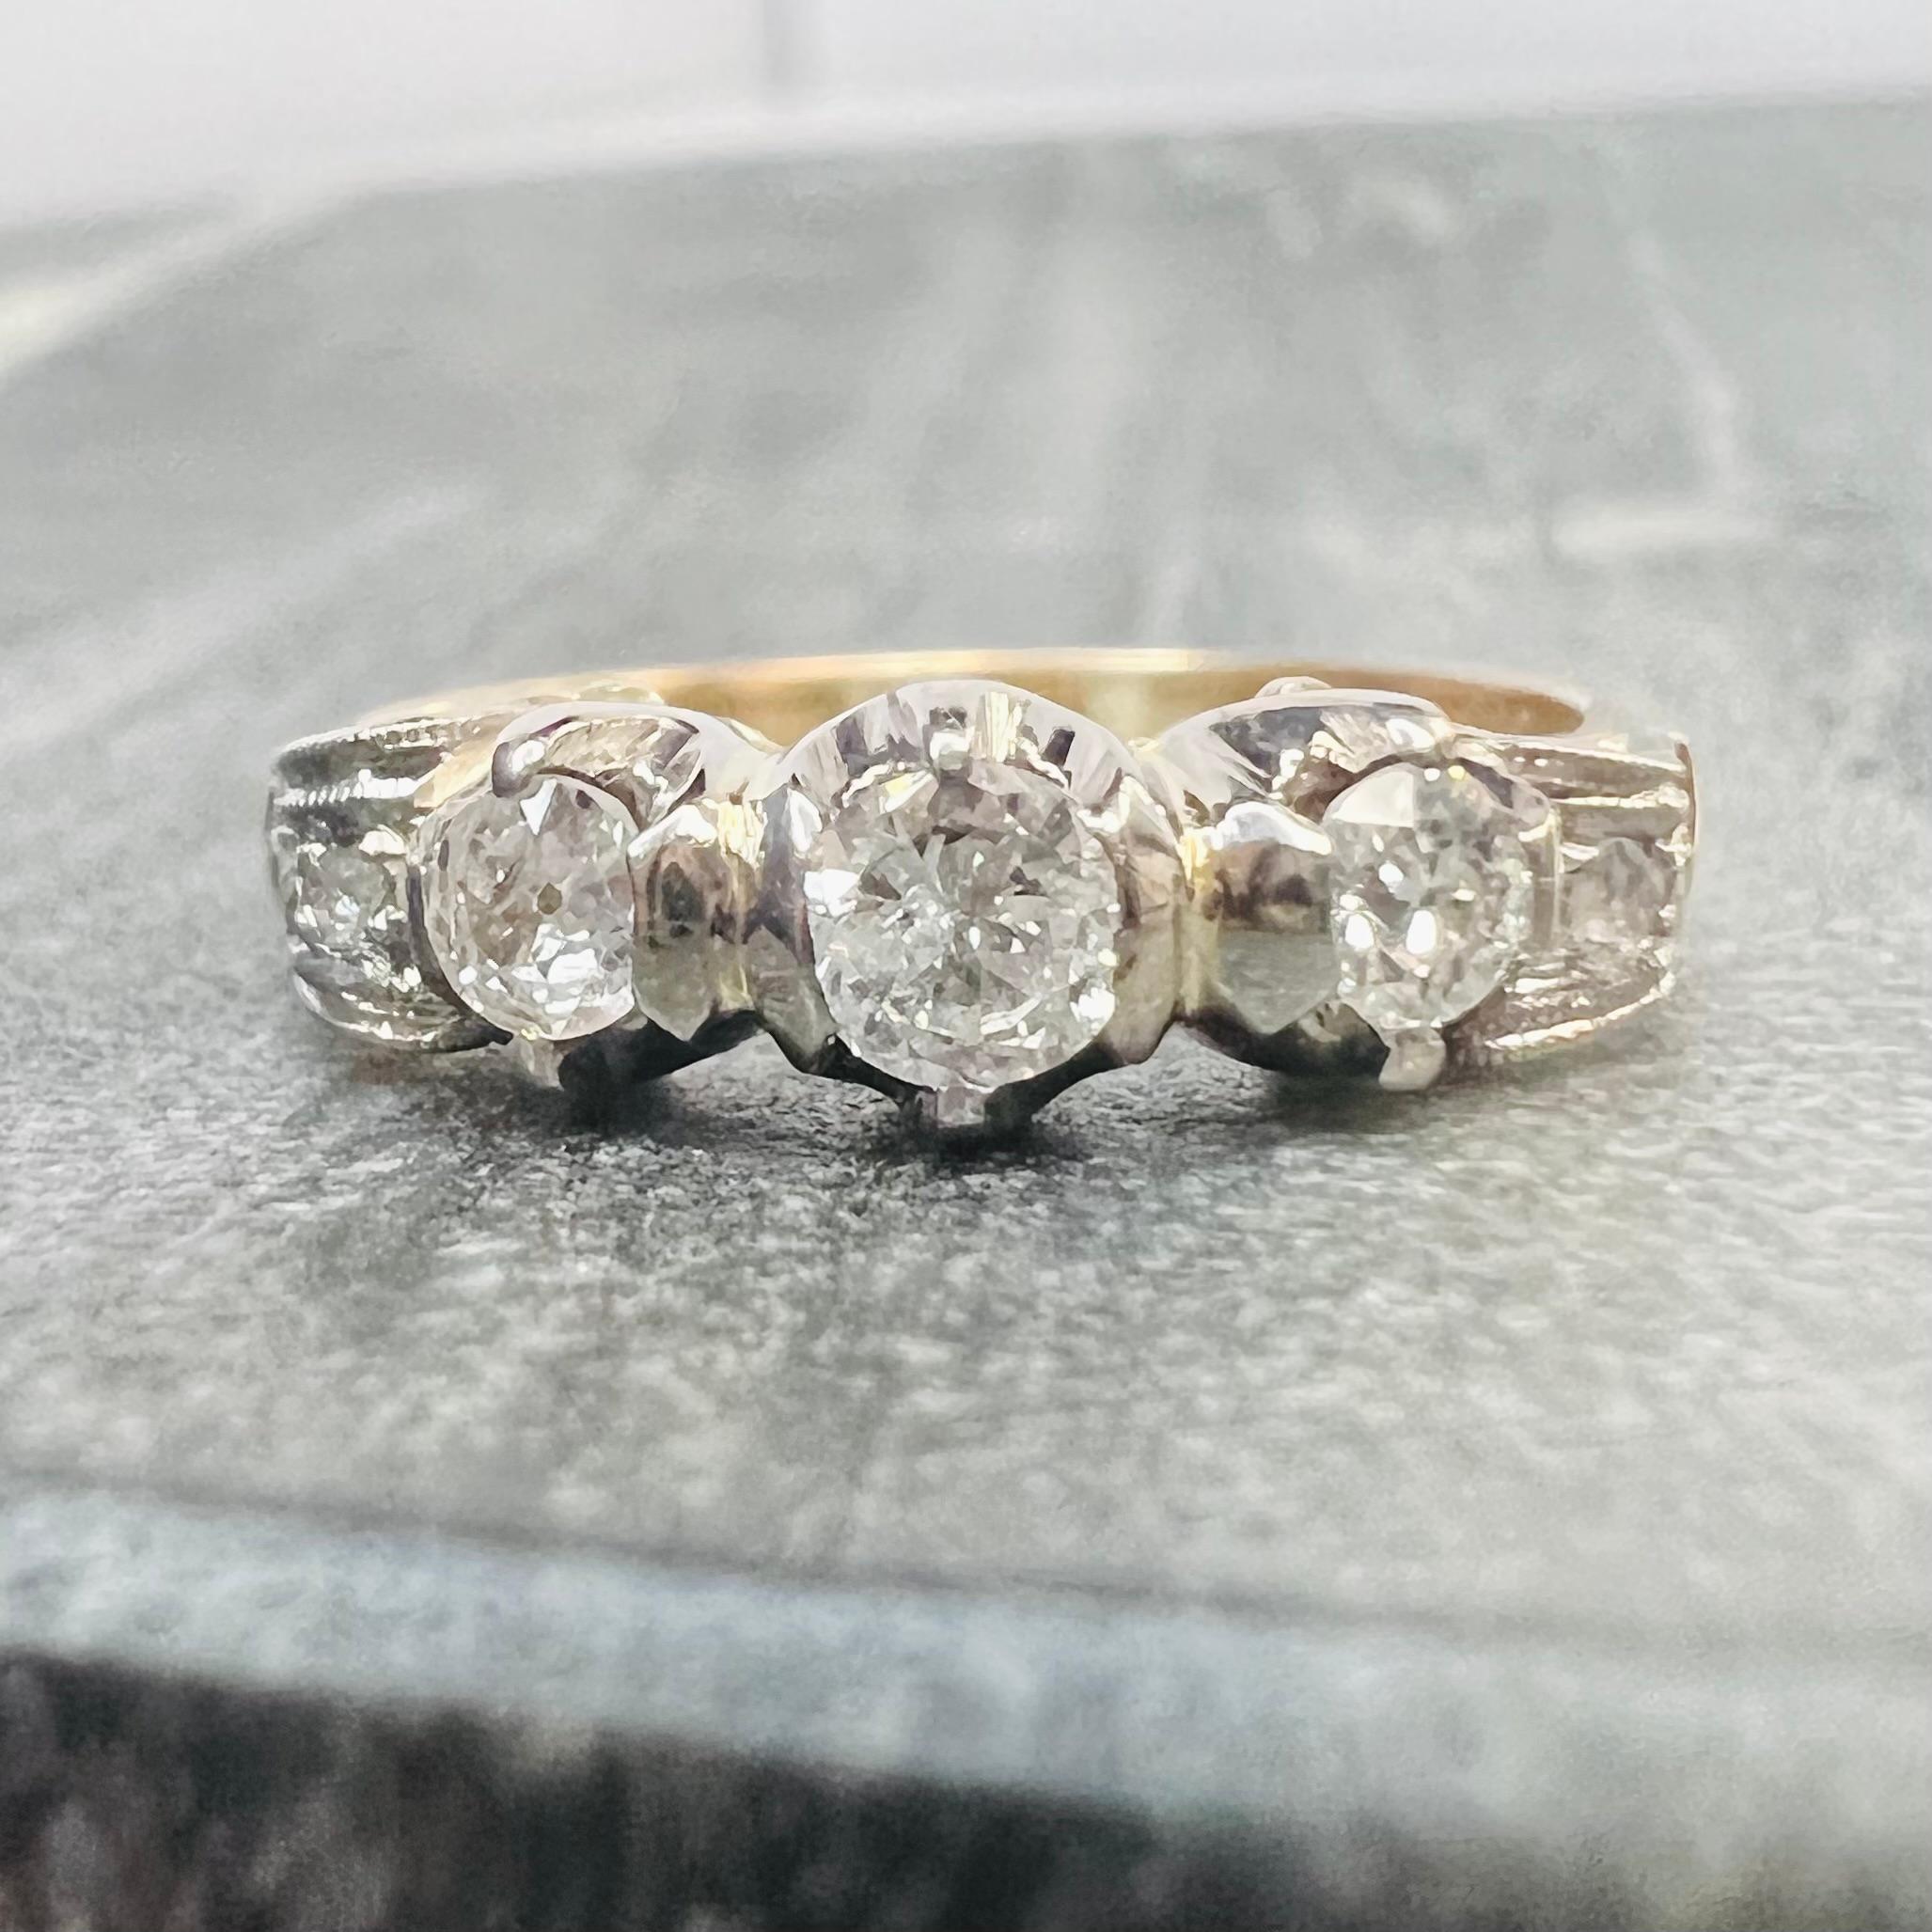 Présenter un,

Magnifique bague édouardienne vintage avec 3 diamants sertis à la main.

L'anneau est gravé d'un motif avec des diamants sur du platine.

L'anneau est en or jaune 18 carats 

Les diamants sont naturels, extraits de la terre.

Les